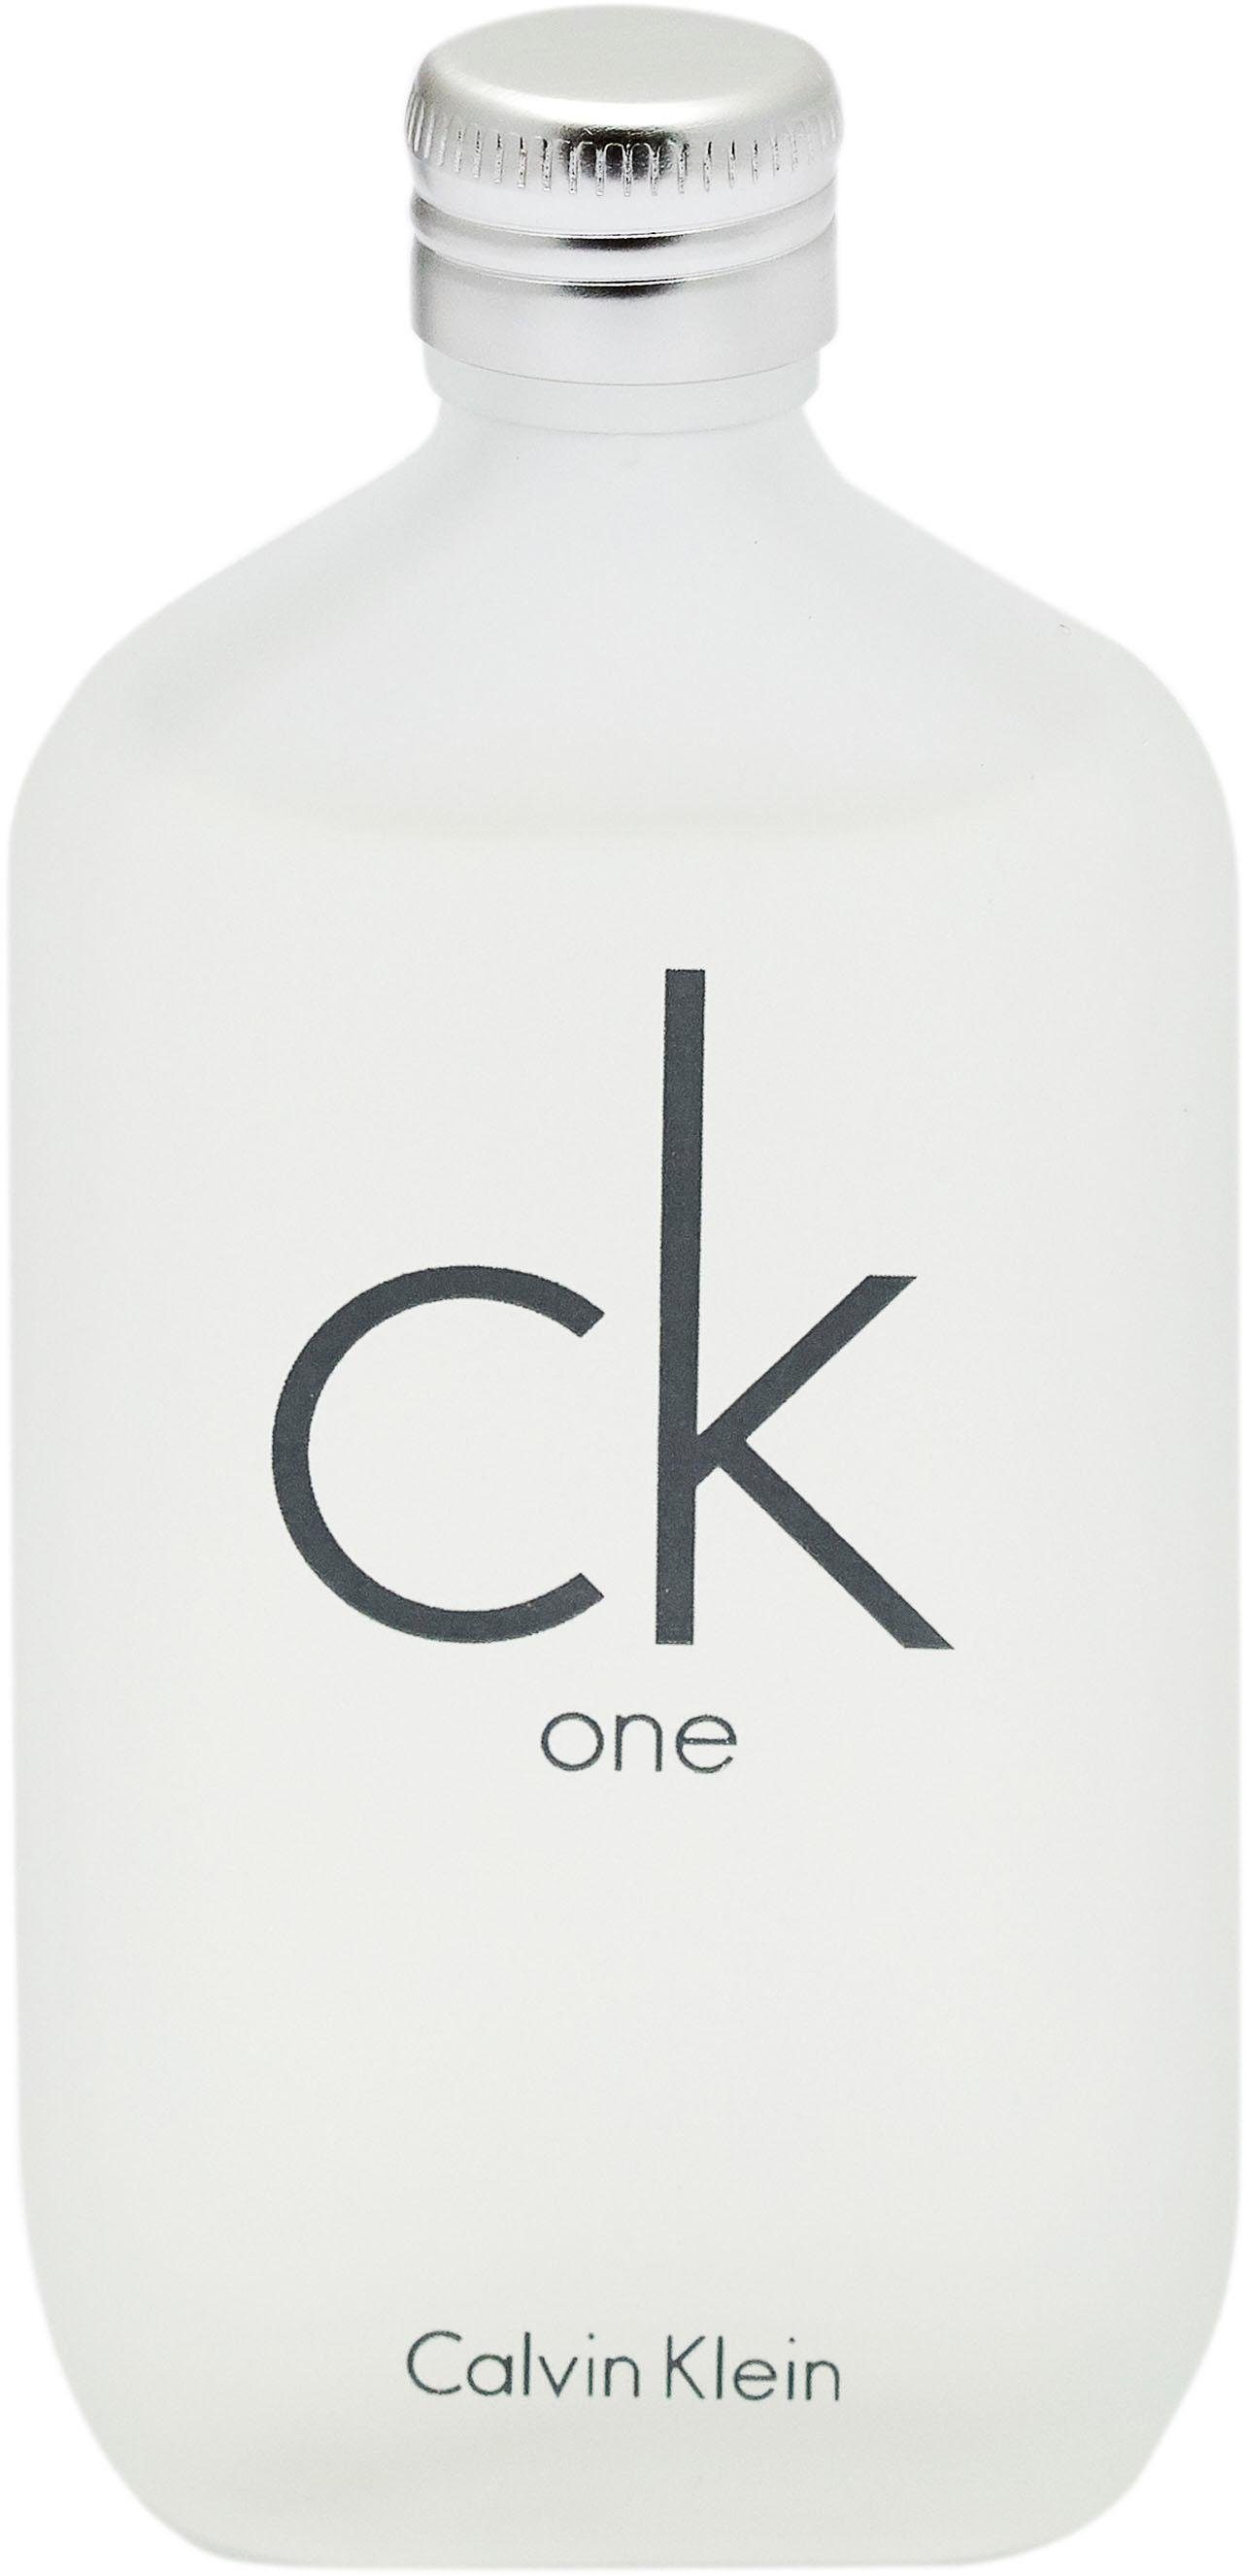 Calvin Klein Duft-Set ck one, 2-tlg